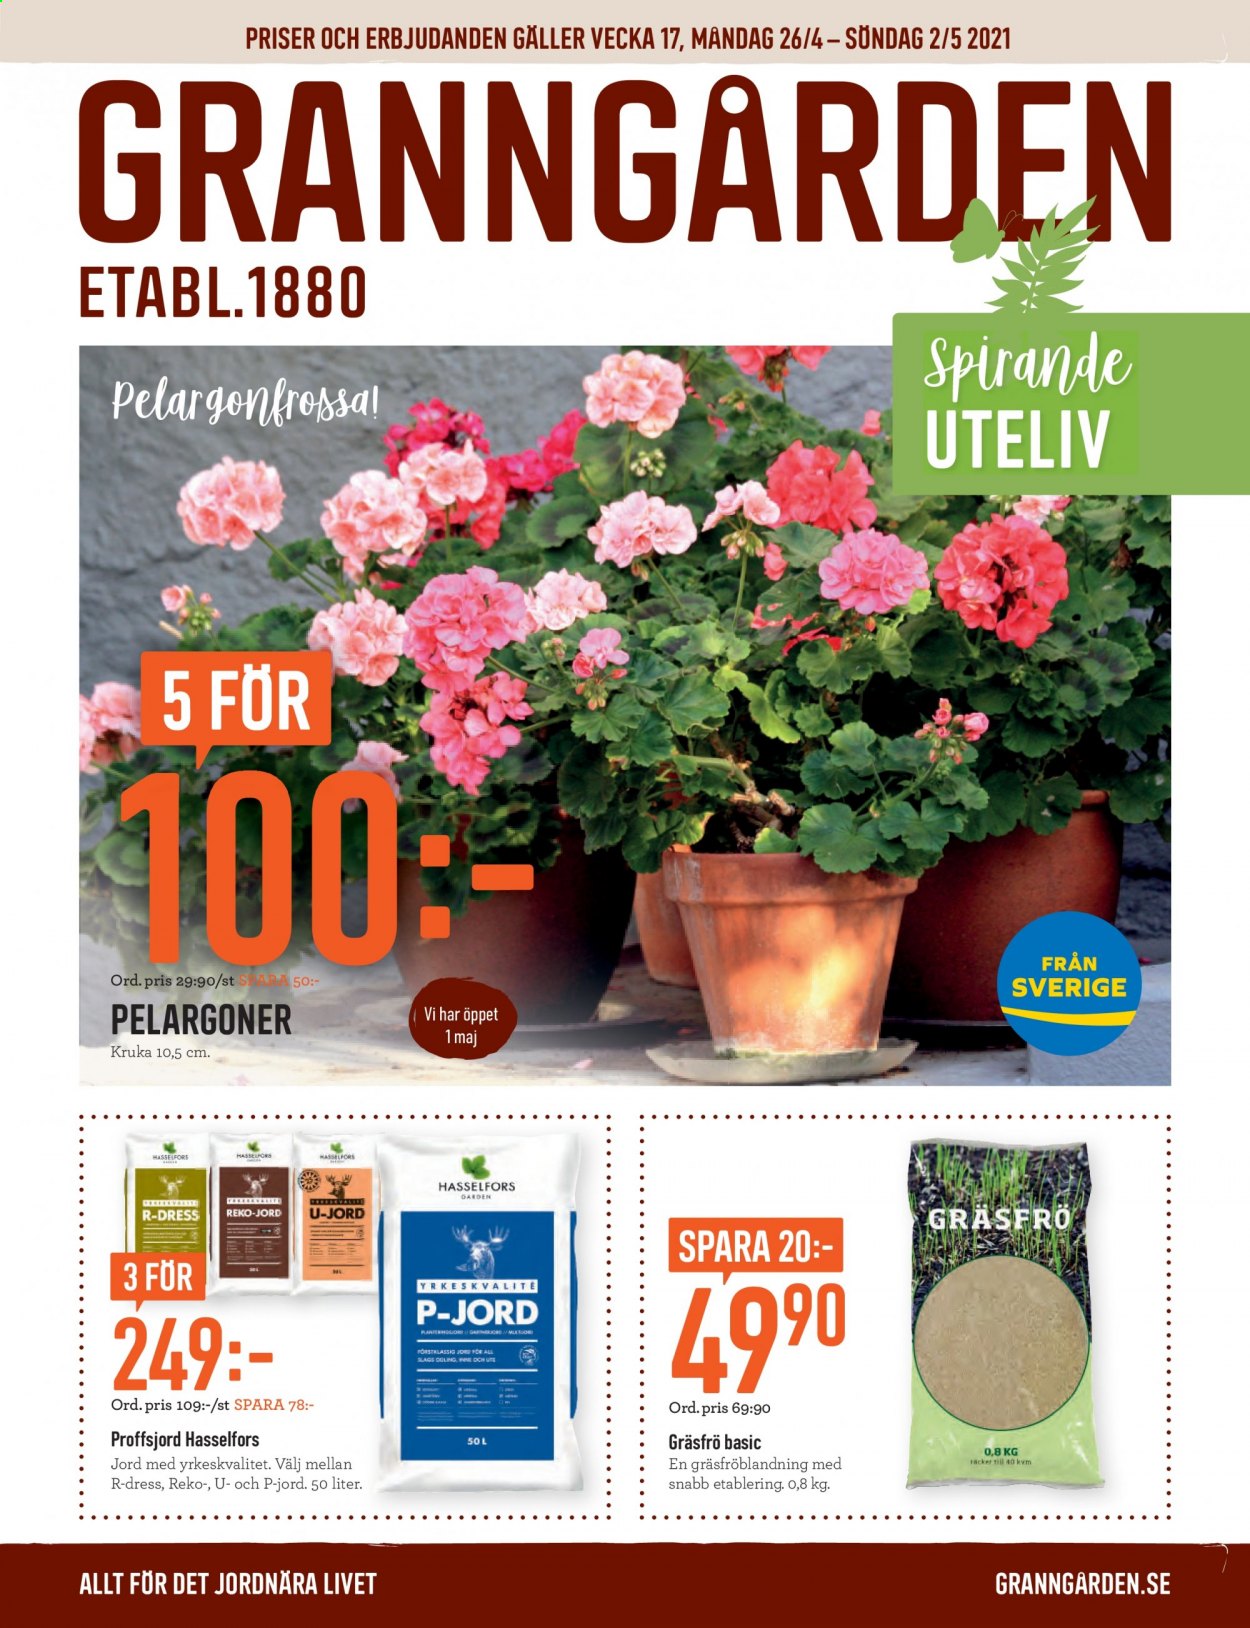 Granngården reklamblad - 26/4 2021 - 2/5 2021.